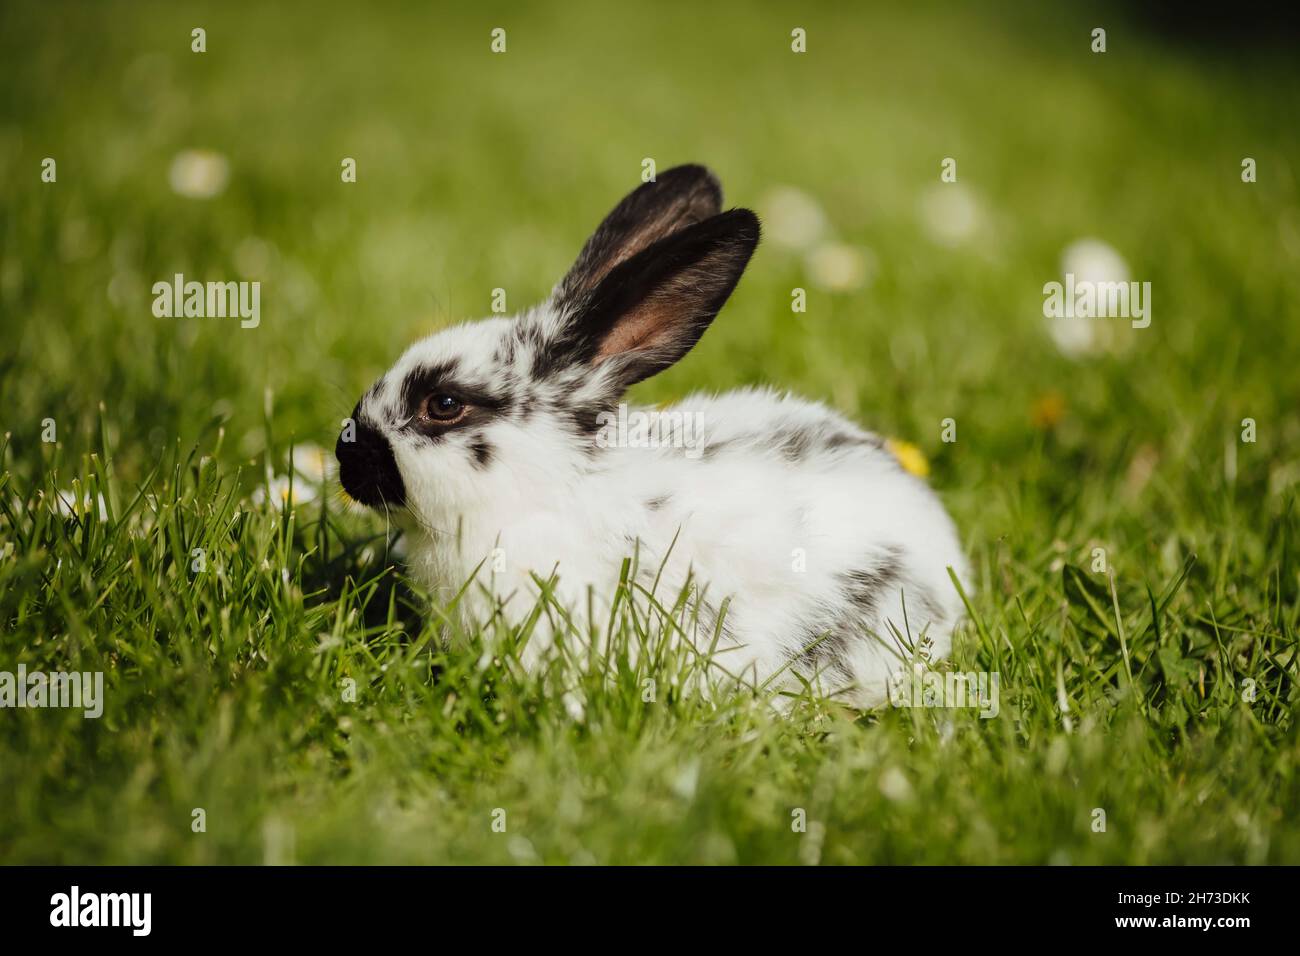 Un joli lapin noir et blanc joue sur l'herbe Banque D'Images